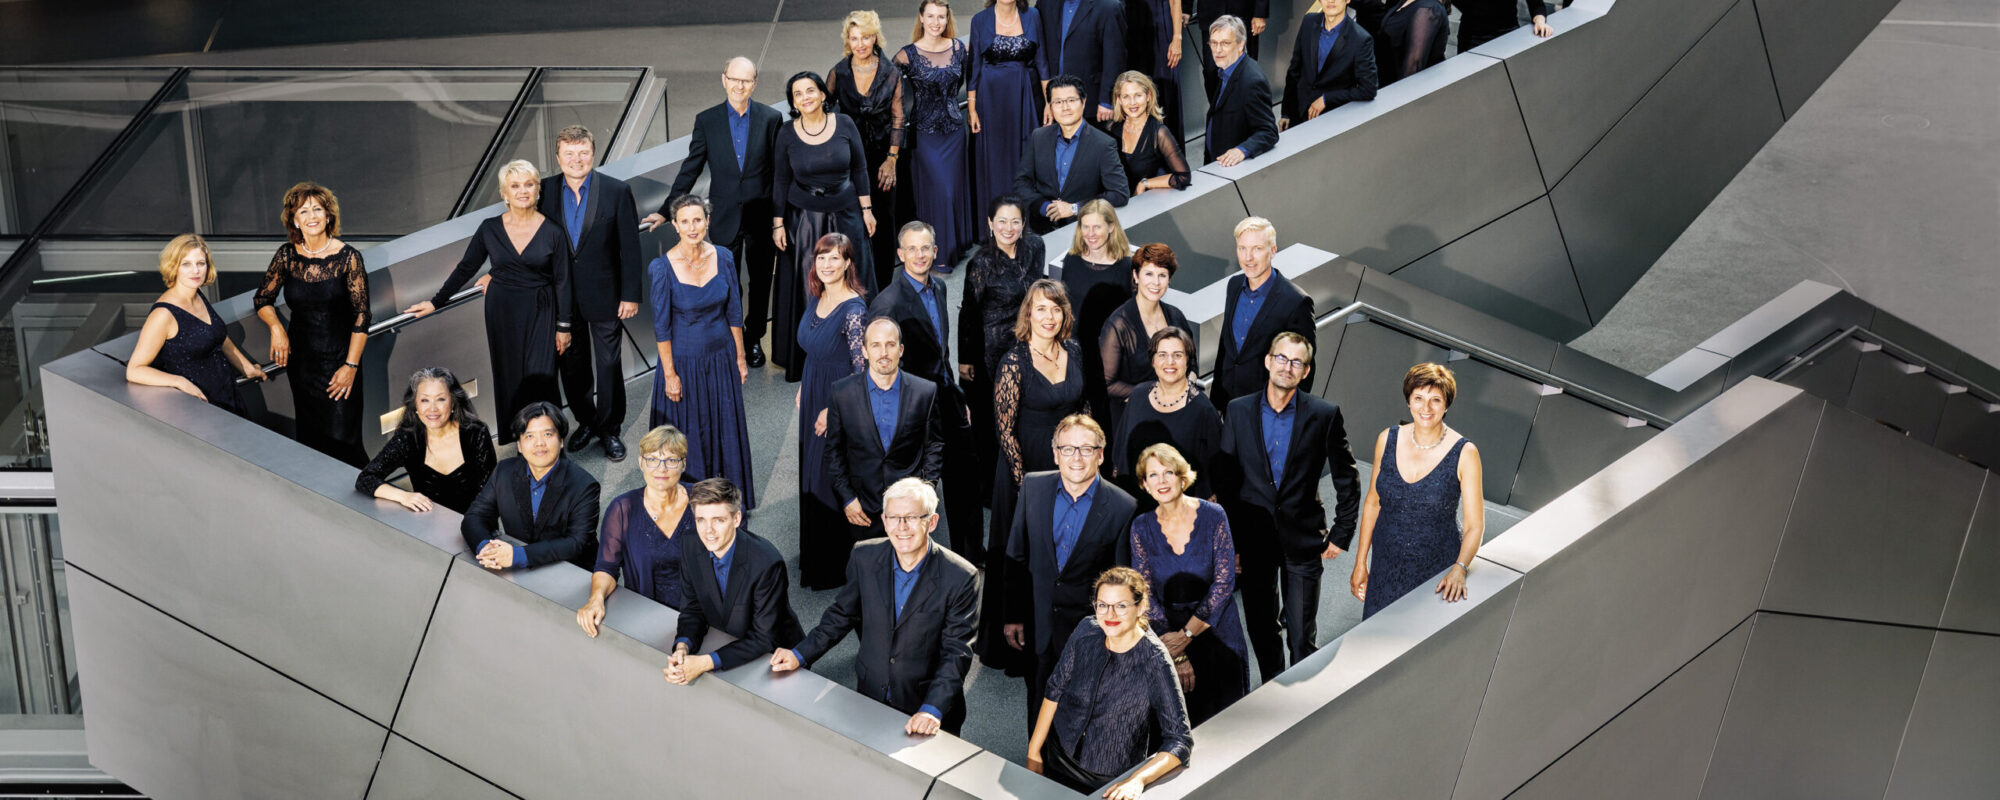 Chor des Bayerischen Rundfunks, © Atrid Ackermann